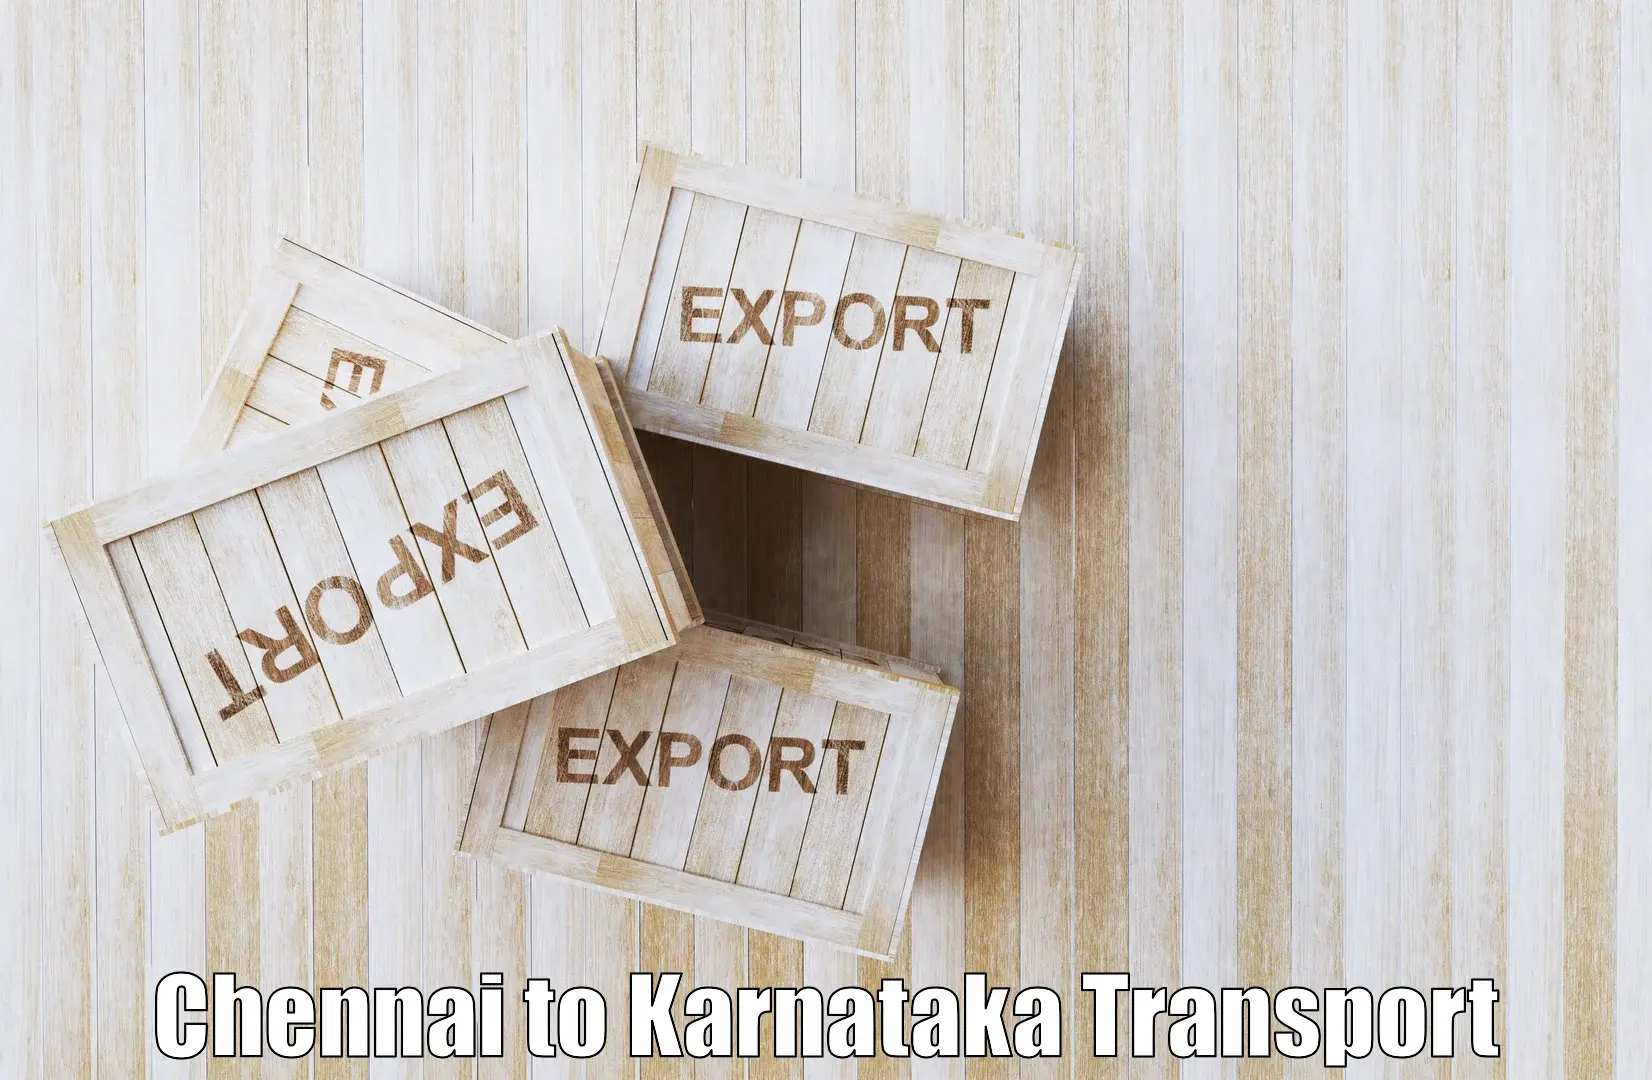 Online transport booking in Chennai to Kanjarakatte